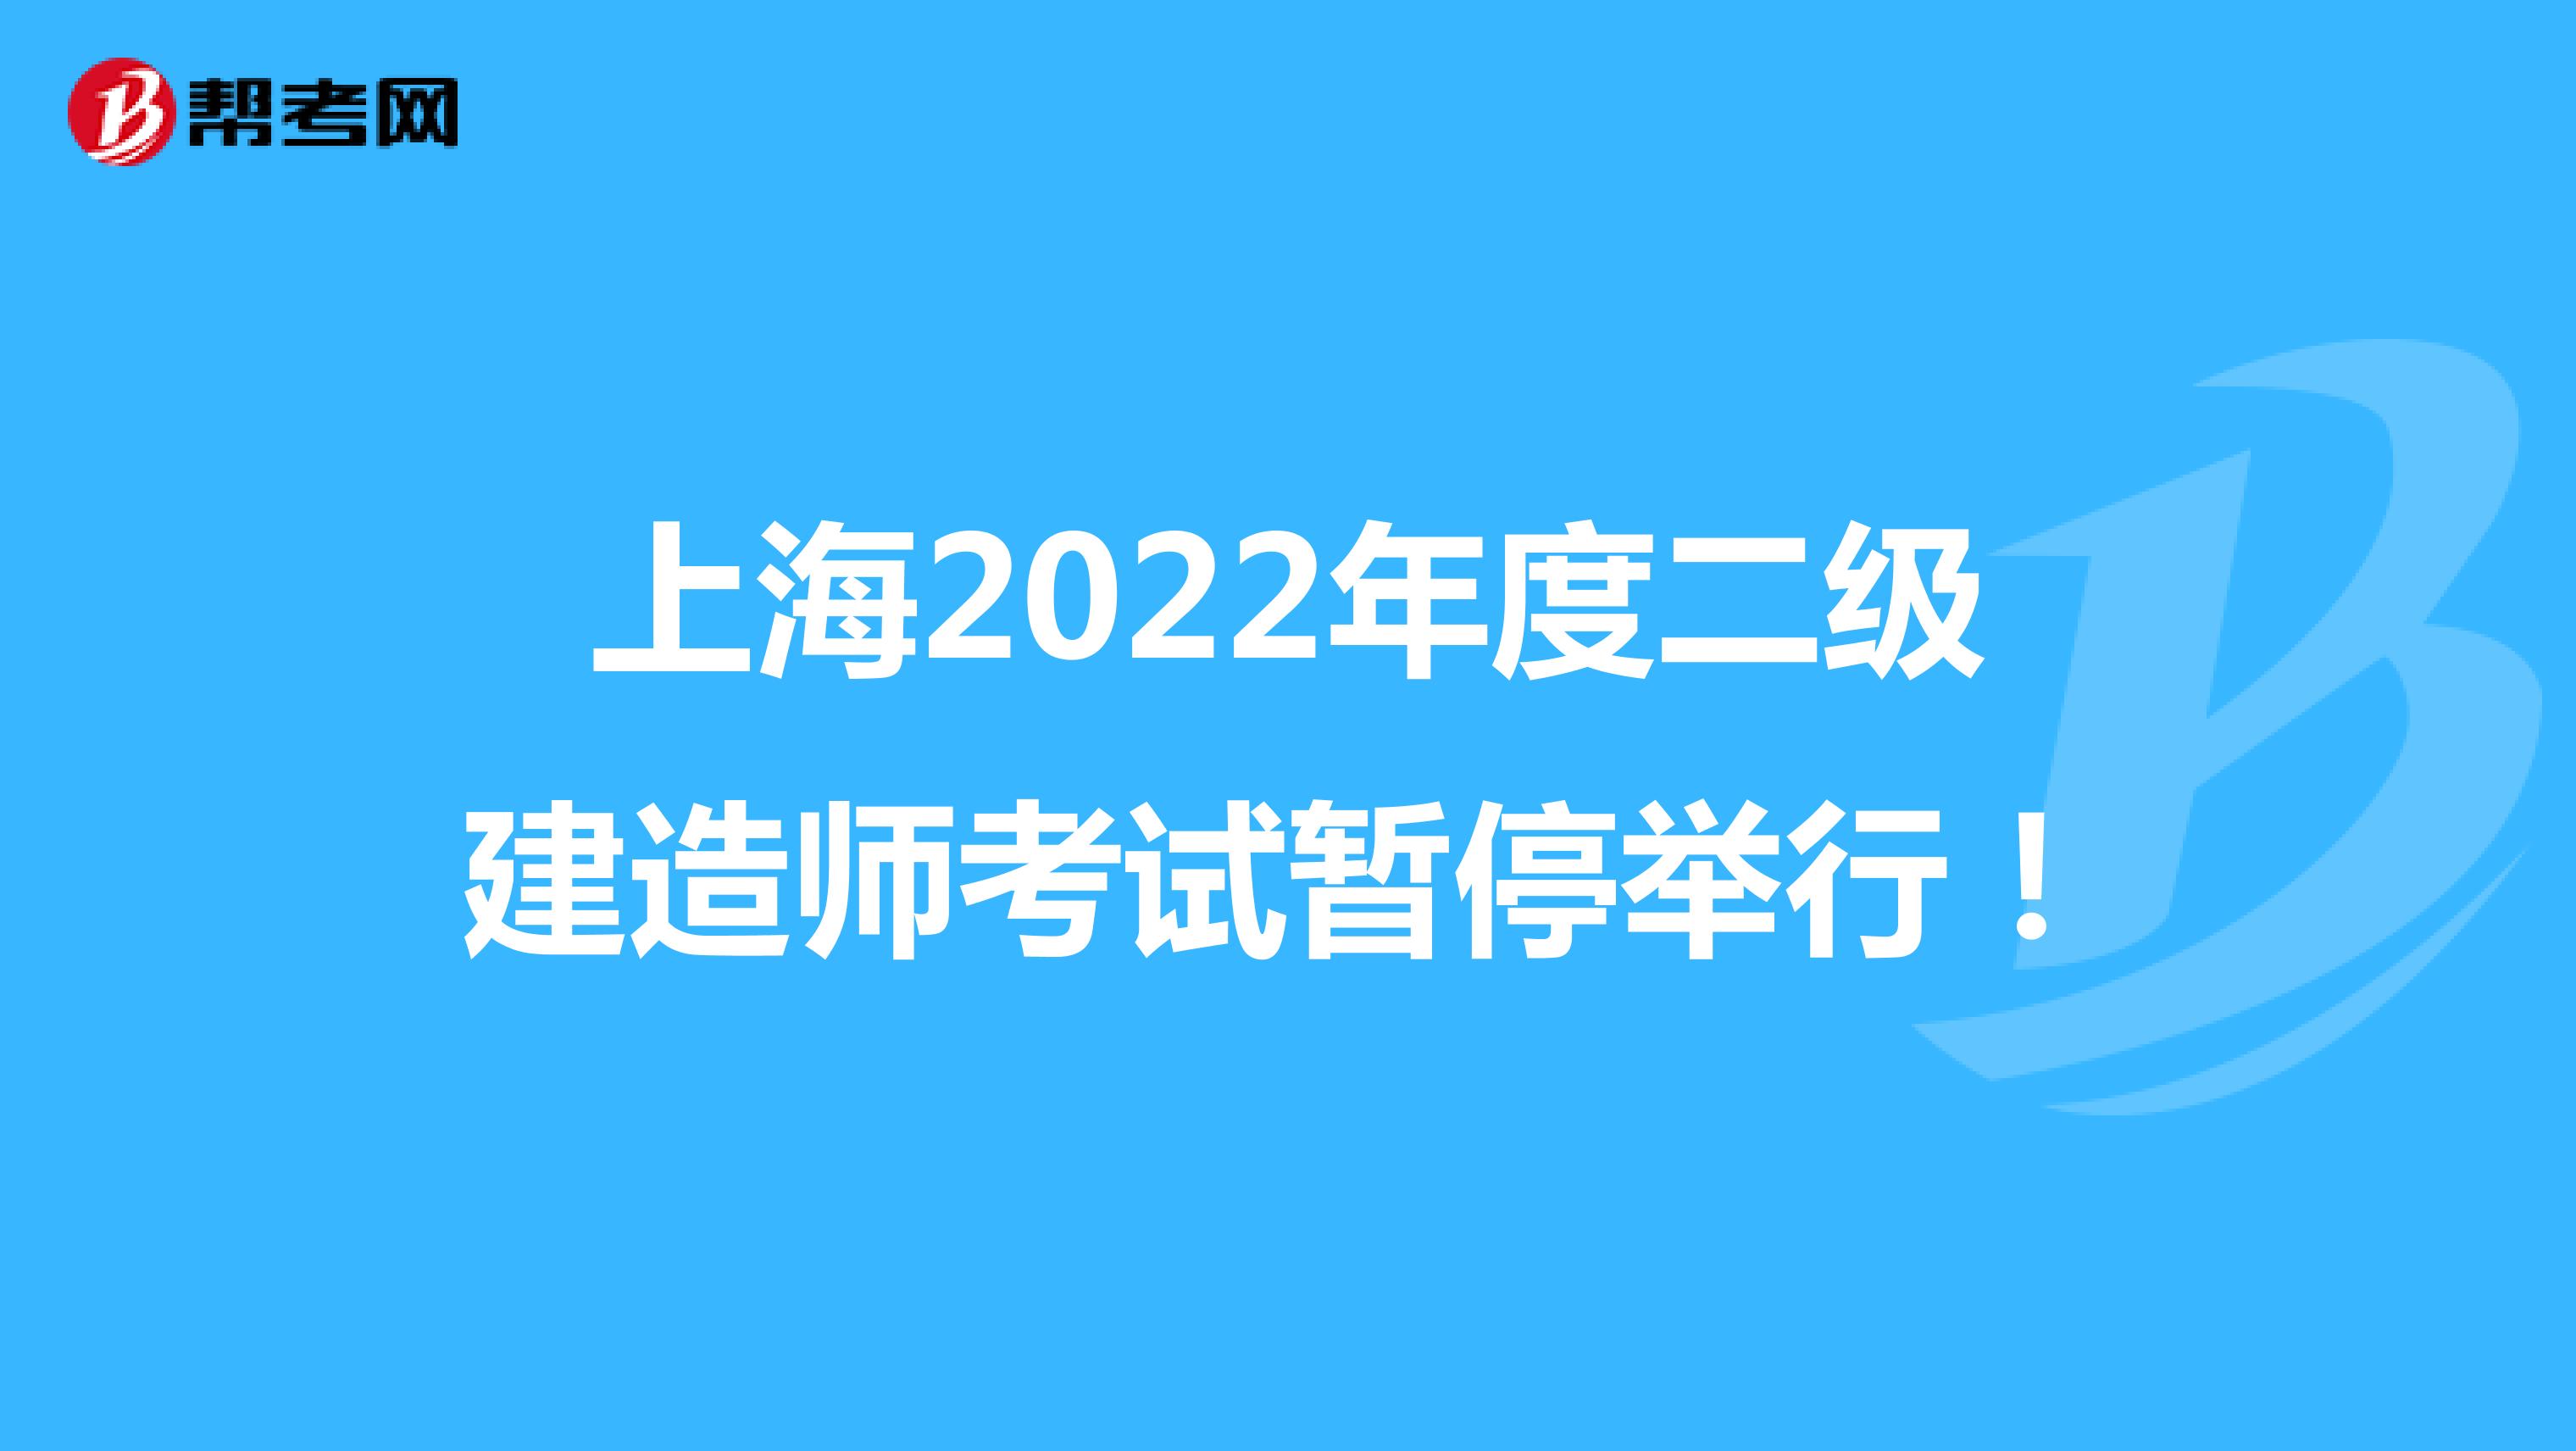 上海2022年度二级建造师考试暂停举行！